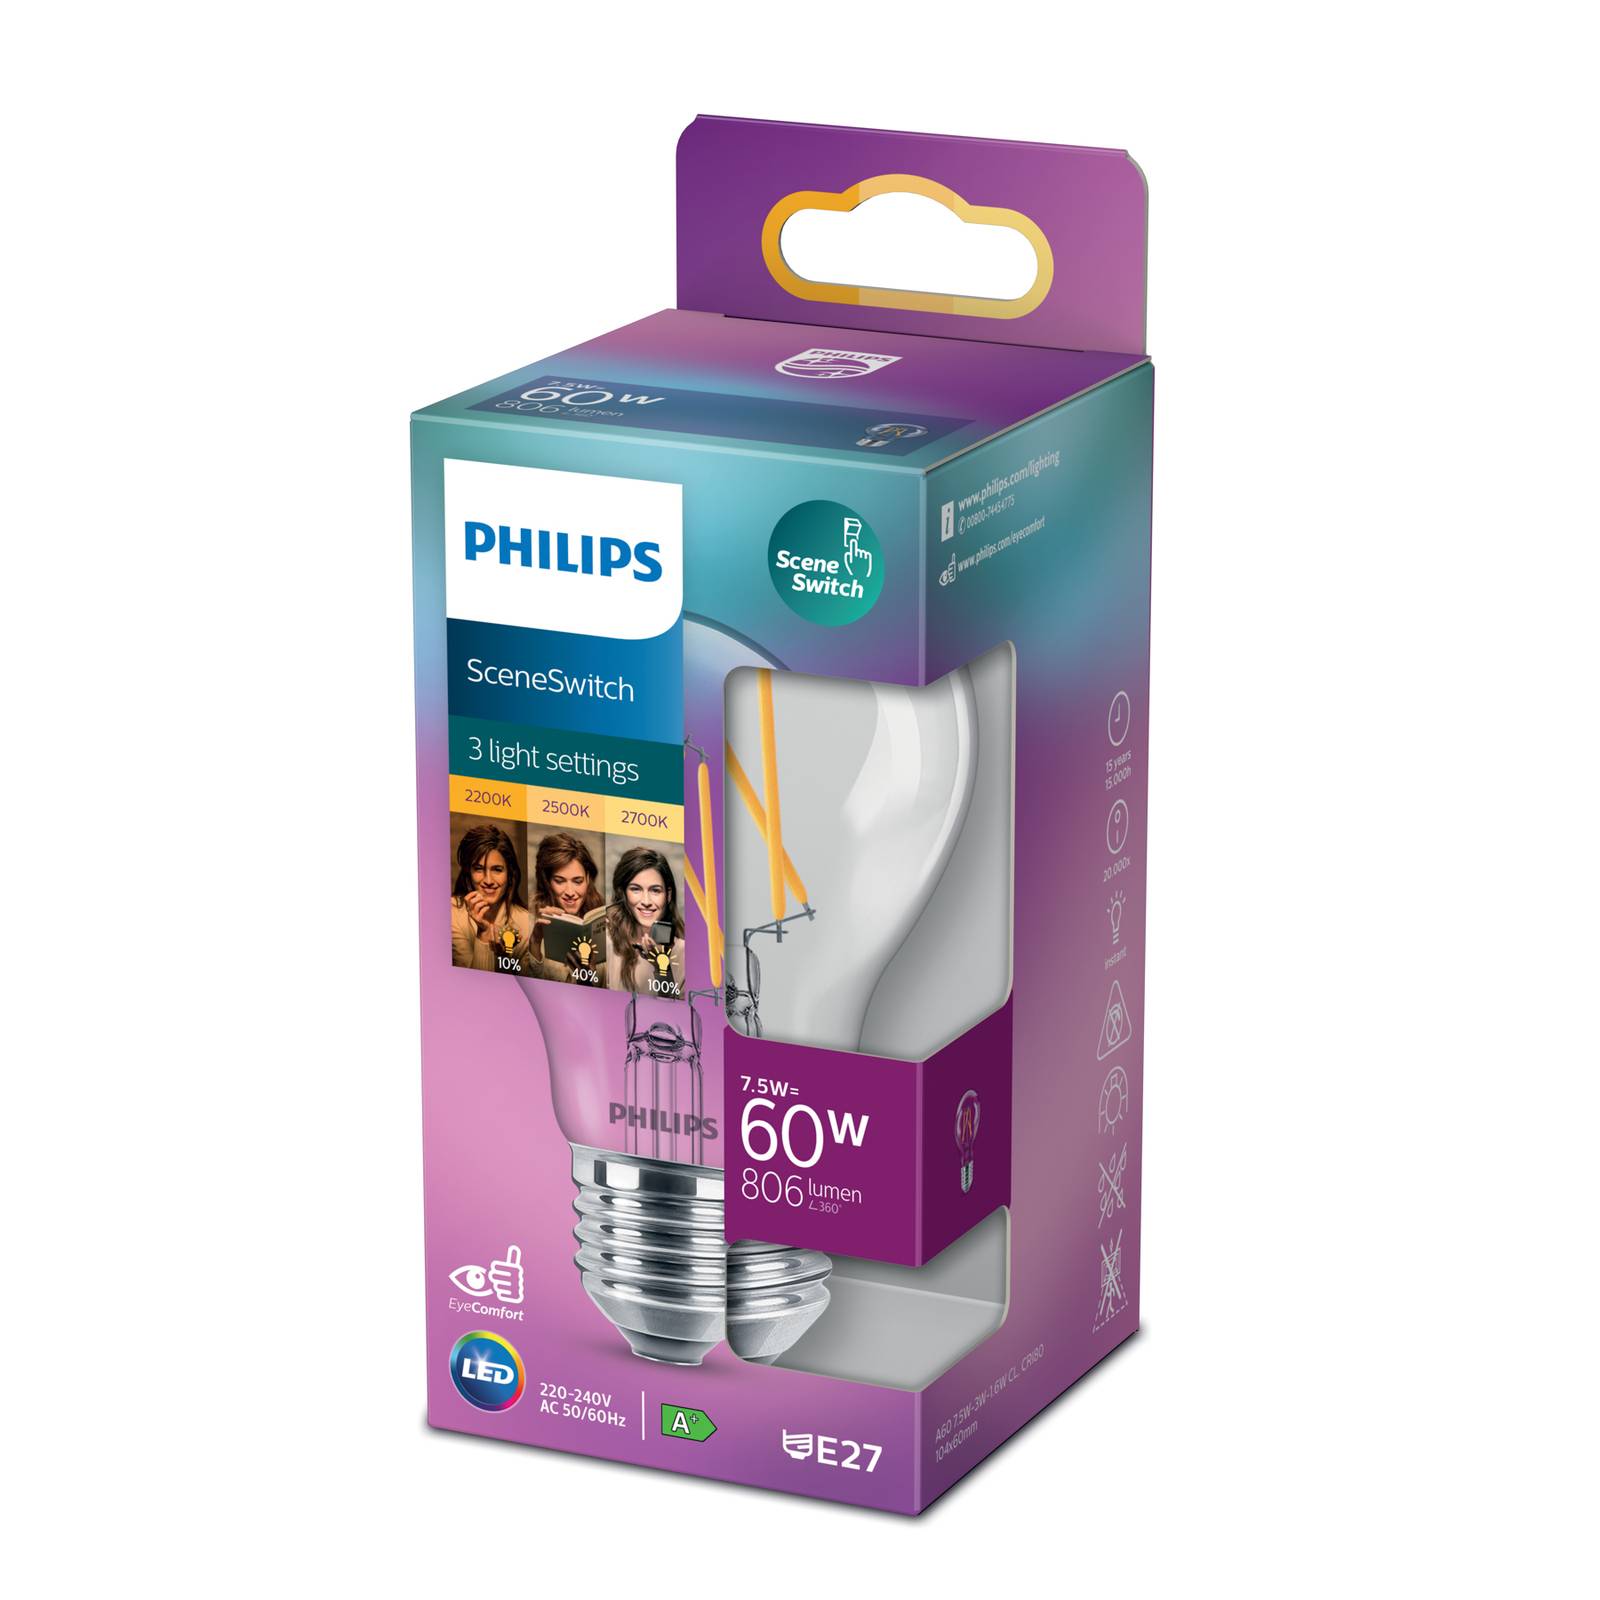 Philips SceneSwitch E27 LED-lampa 7,5 W glödtråd